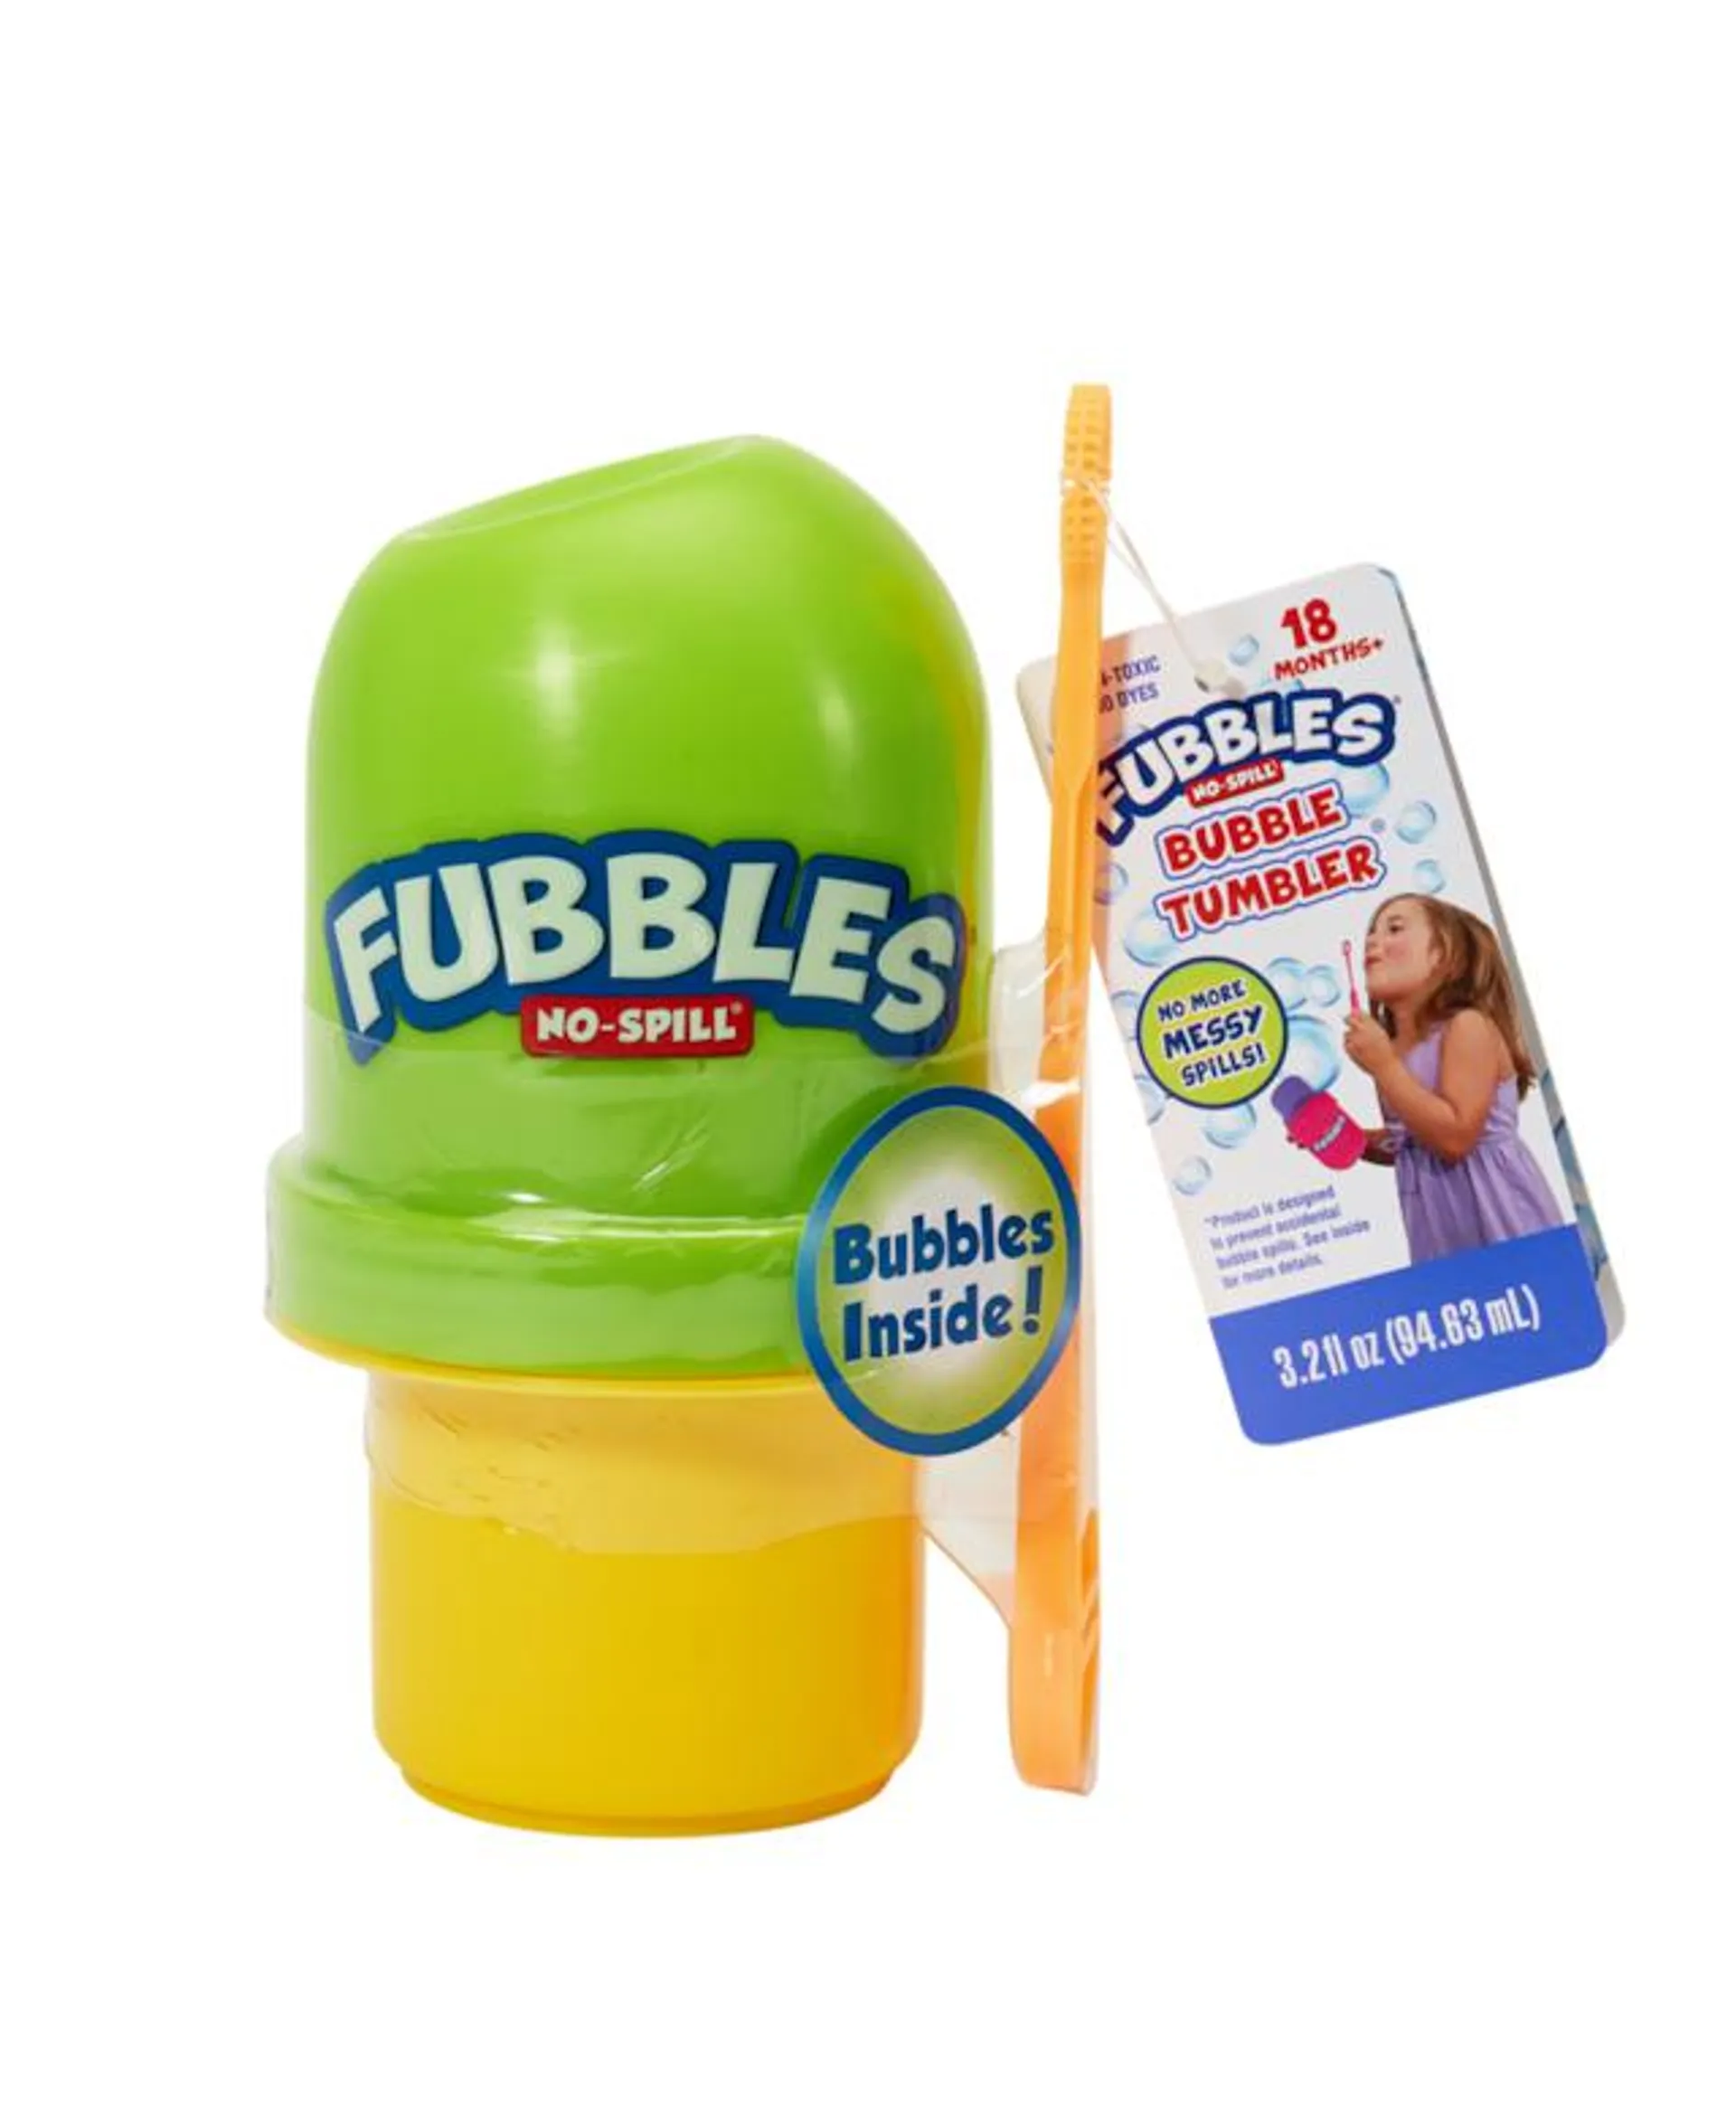 Fubbles Bubbles No Spill Bubble Tumbler for Kids, With Bubbles Solution, 3-oz, Age 3+